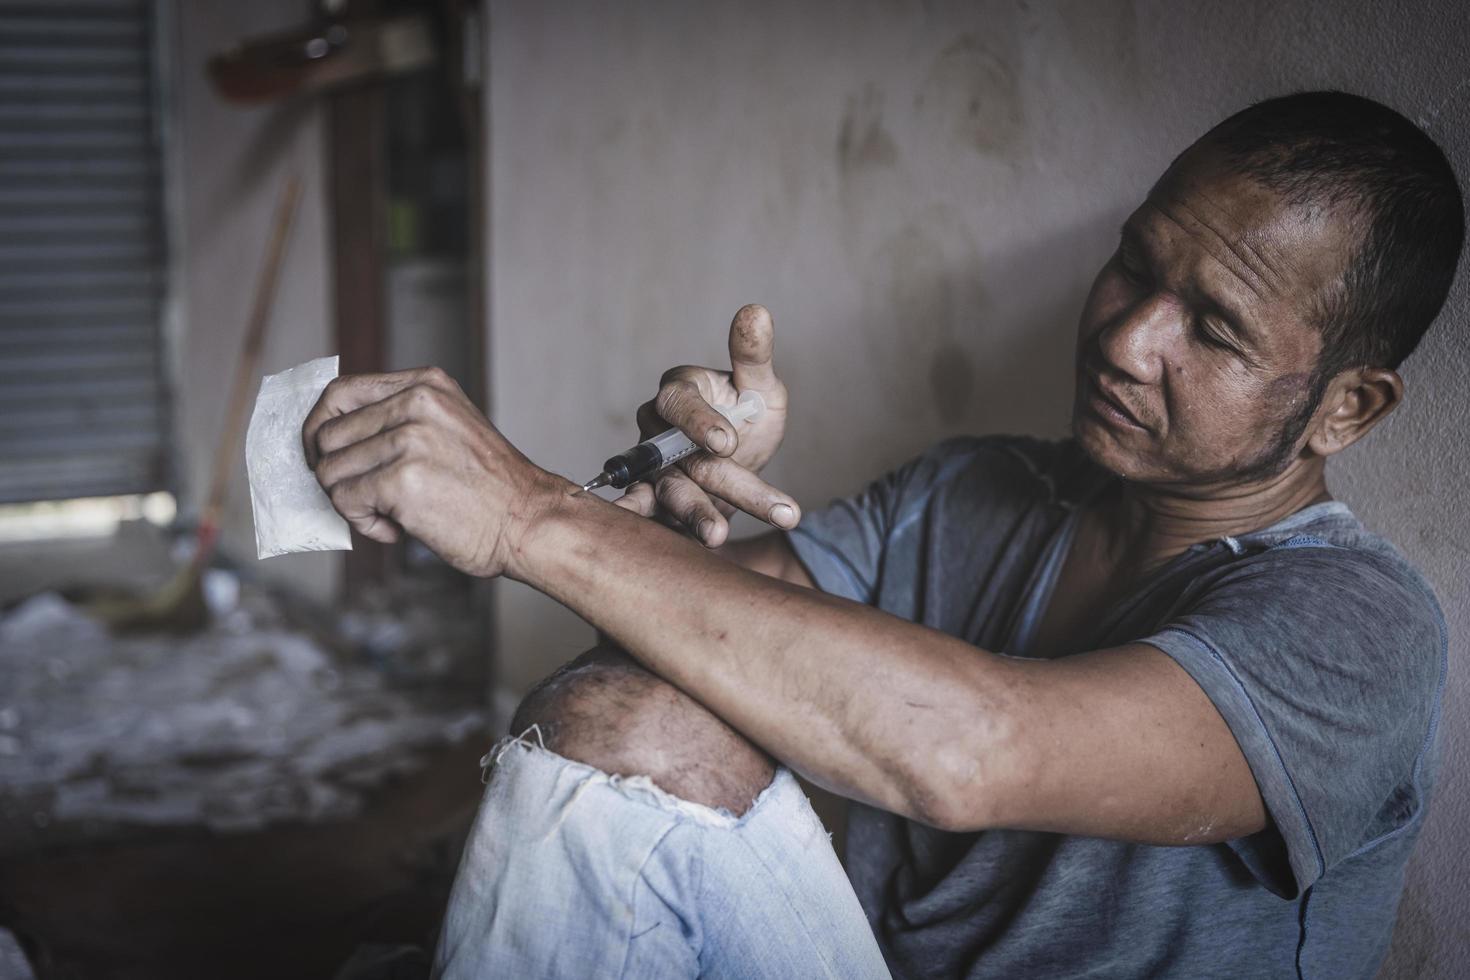 homme toxicomane s'injectant de l'héroïne dans son bras, toxicomane avec seringue utilisant de la drogue, concept de drogue, 26 juin, journée internationale contre la toxicomanie. photo